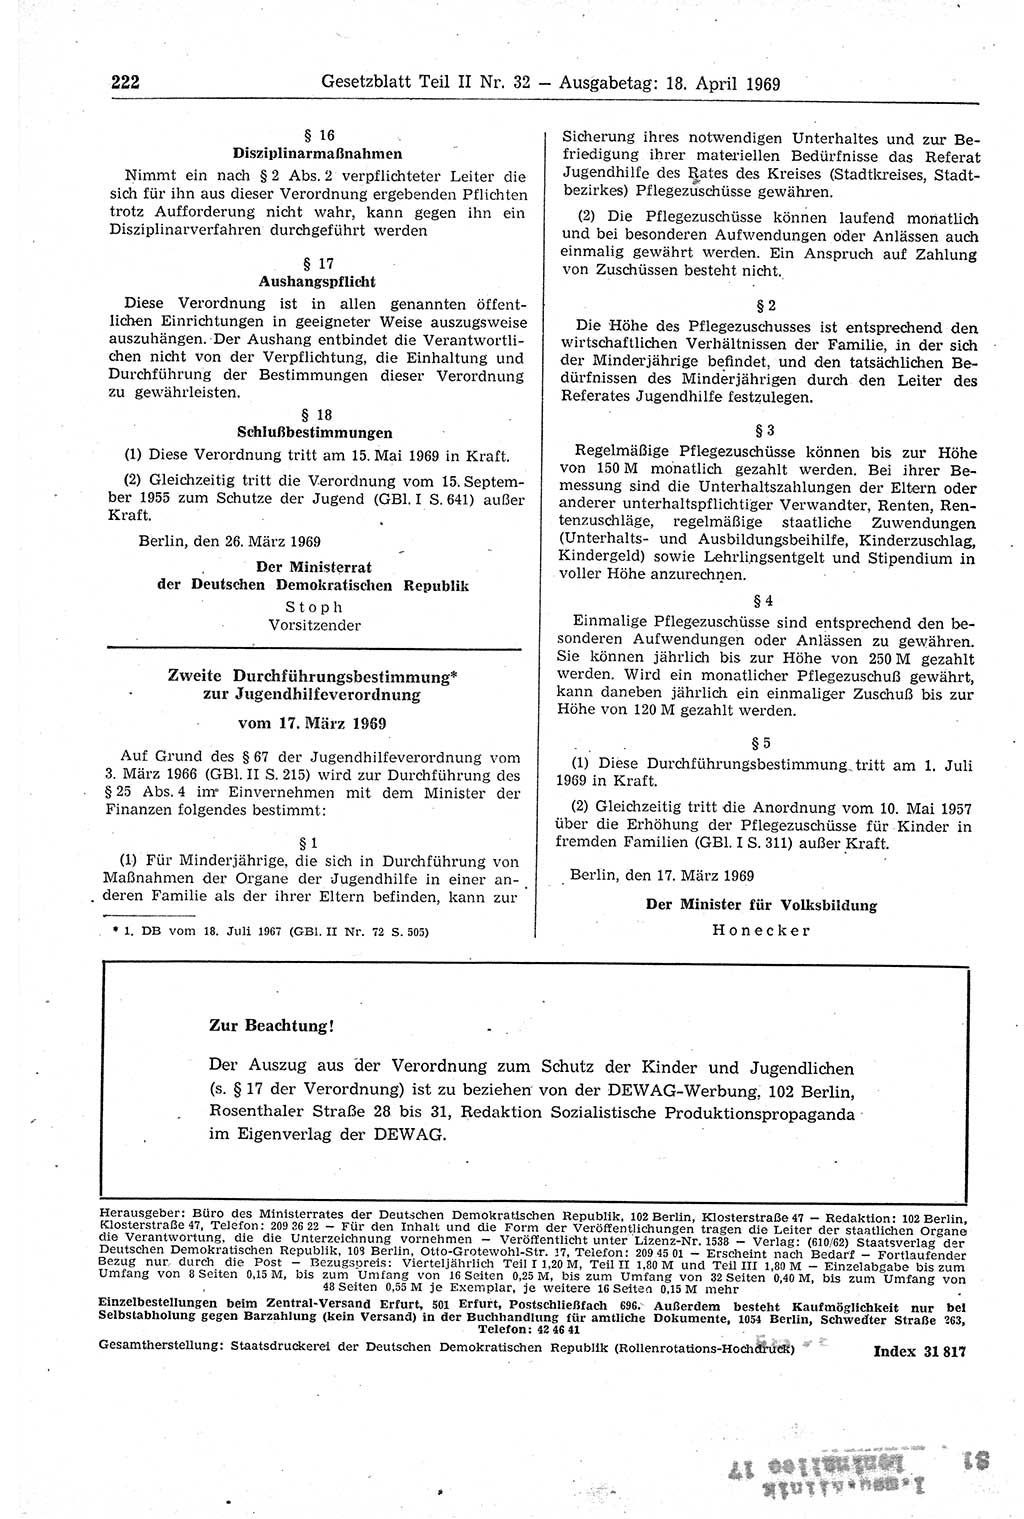 Gesetzblatt (GBl.) der Deutschen Demokratischen Republik (DDR) Teil ⅠⅠ 1969, Seite 222 (GBl. DDR ⅠⅠ 1969, S. 222)